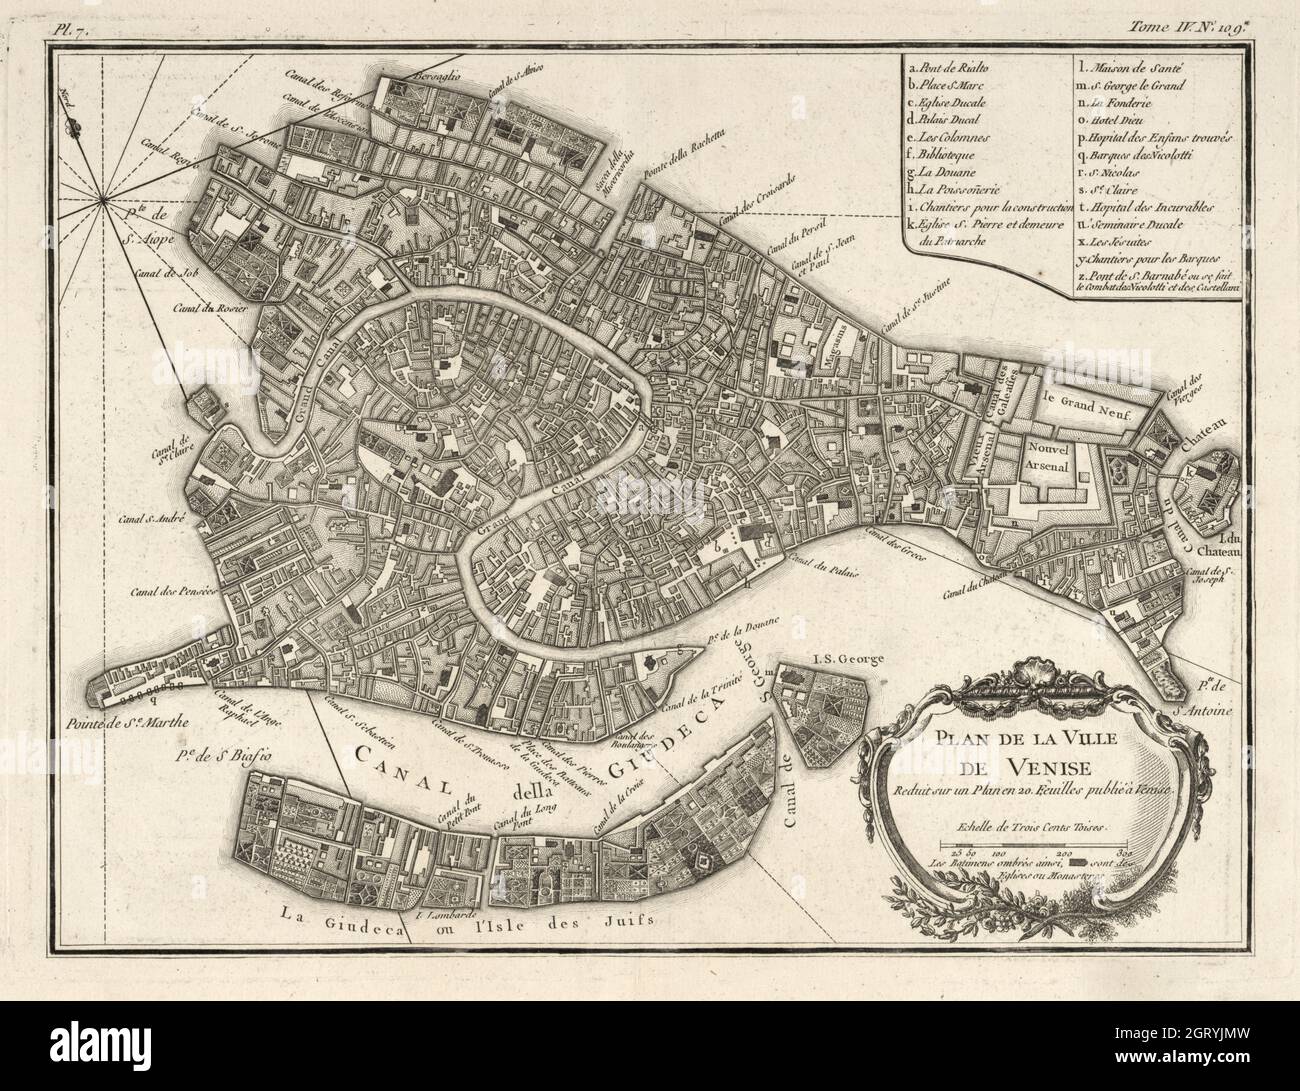 Map of Venice, 1764 by Bellin, Jacques Nicolas, 1703-1772. Plan de la ville de Venise : reduit sur un plan en 20. feuilles publié à Venise. Stock Photo